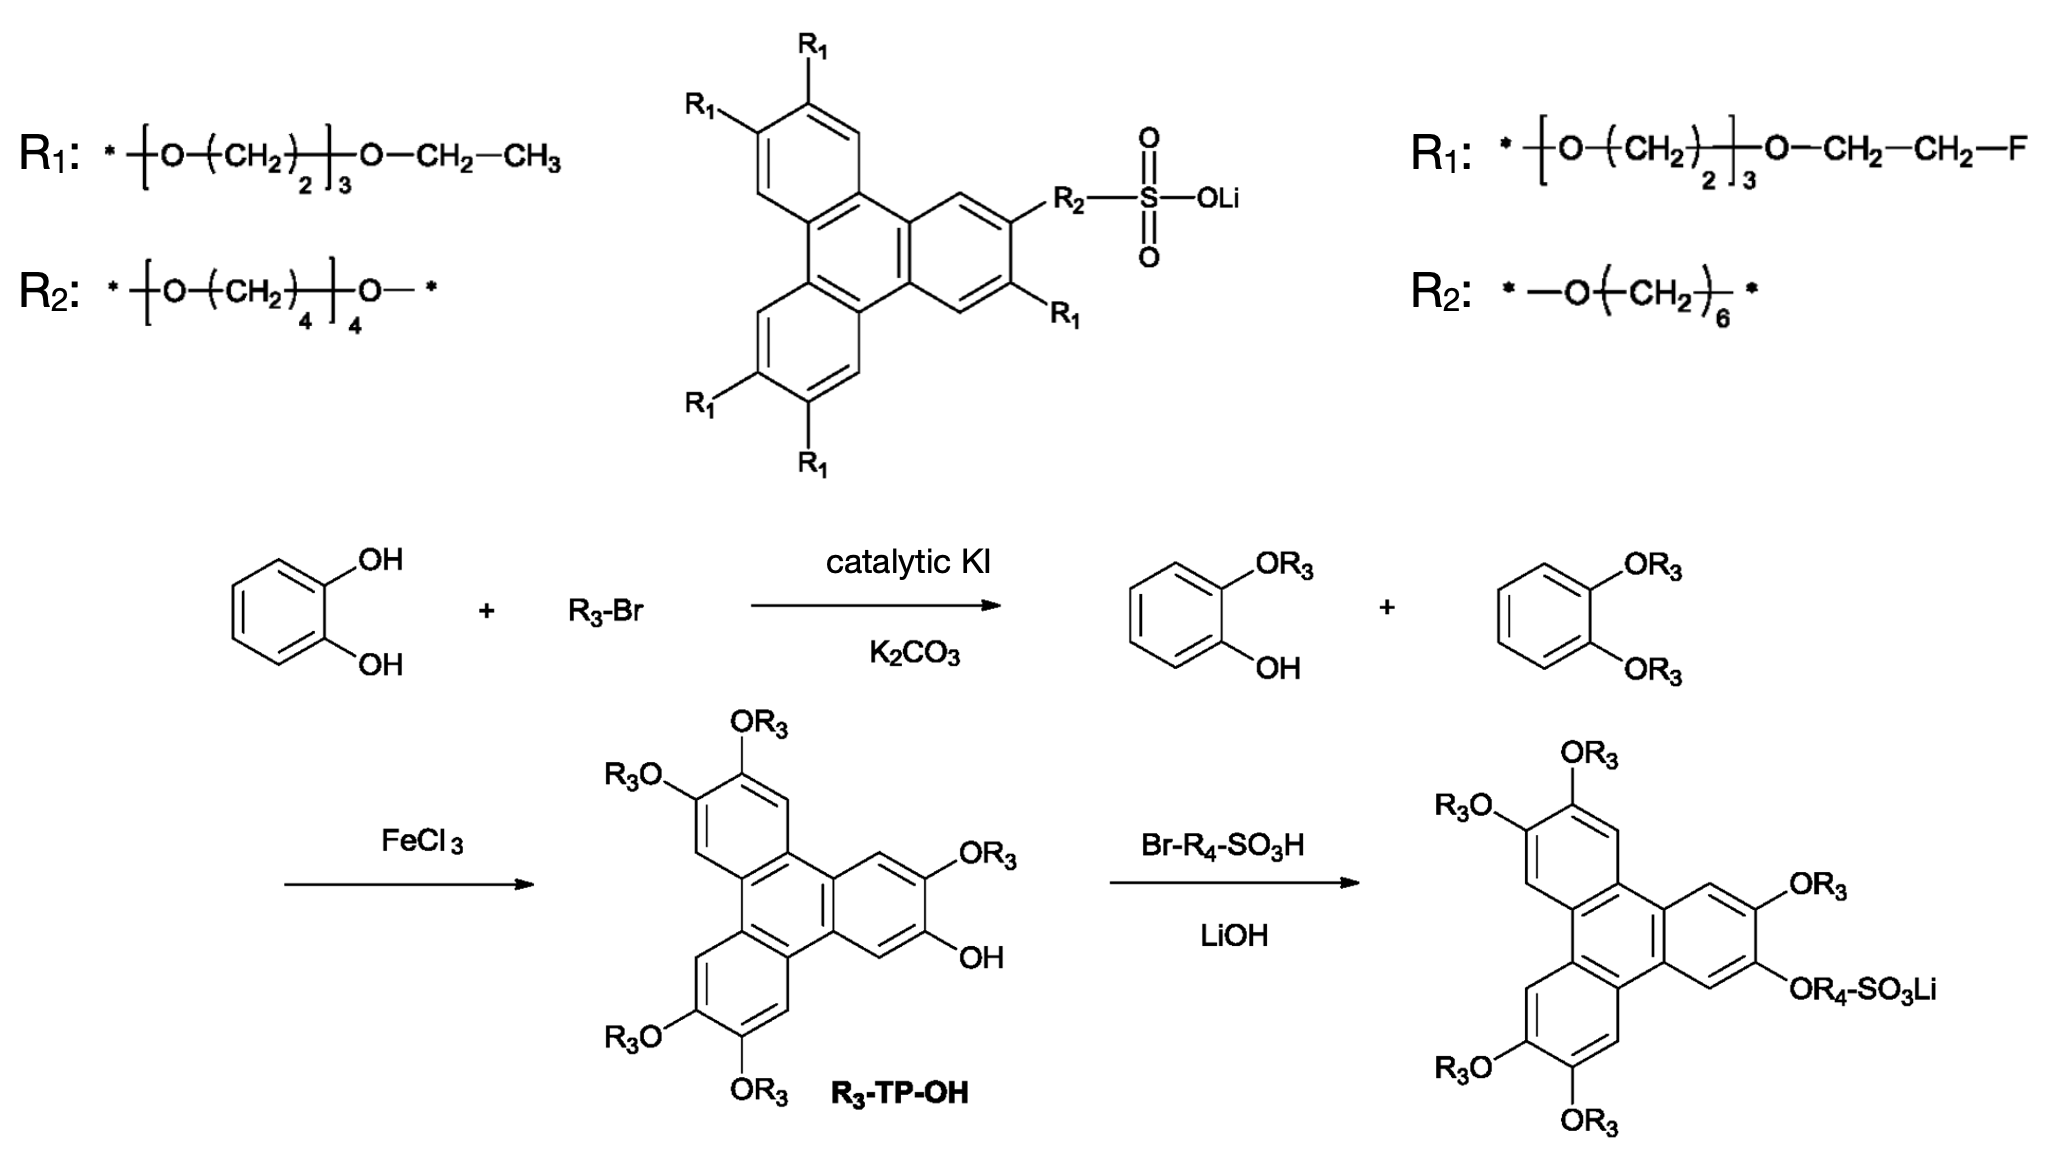 two triphenylene derivatives with (optionally fluorinated) ethylene oxide / lithium sulfonate groups